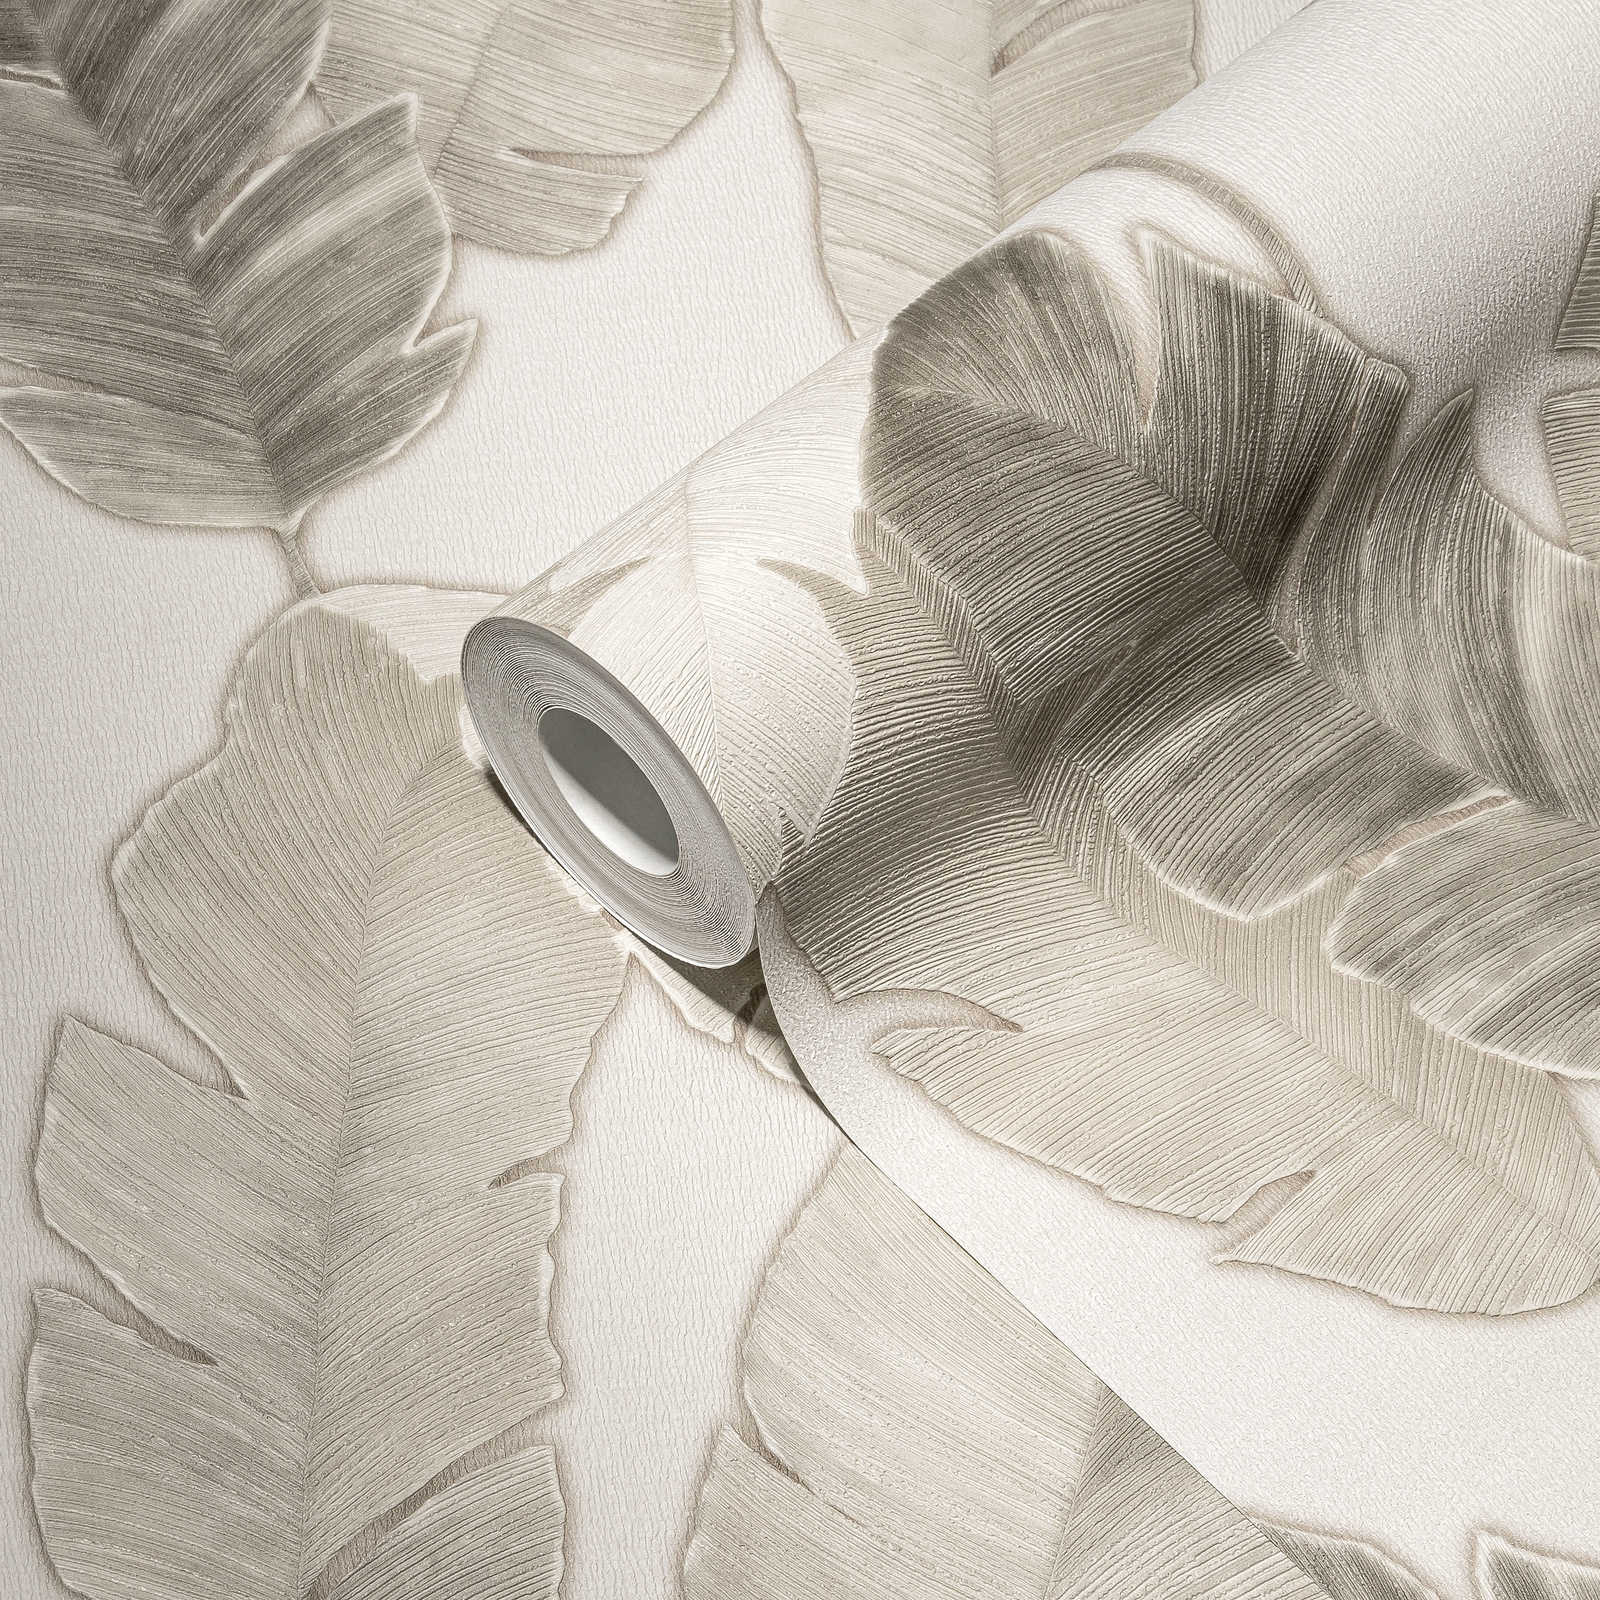             Carta da parati in tessuto non tessuto con sottili foglie di palma - bianco, beige, grigio
        